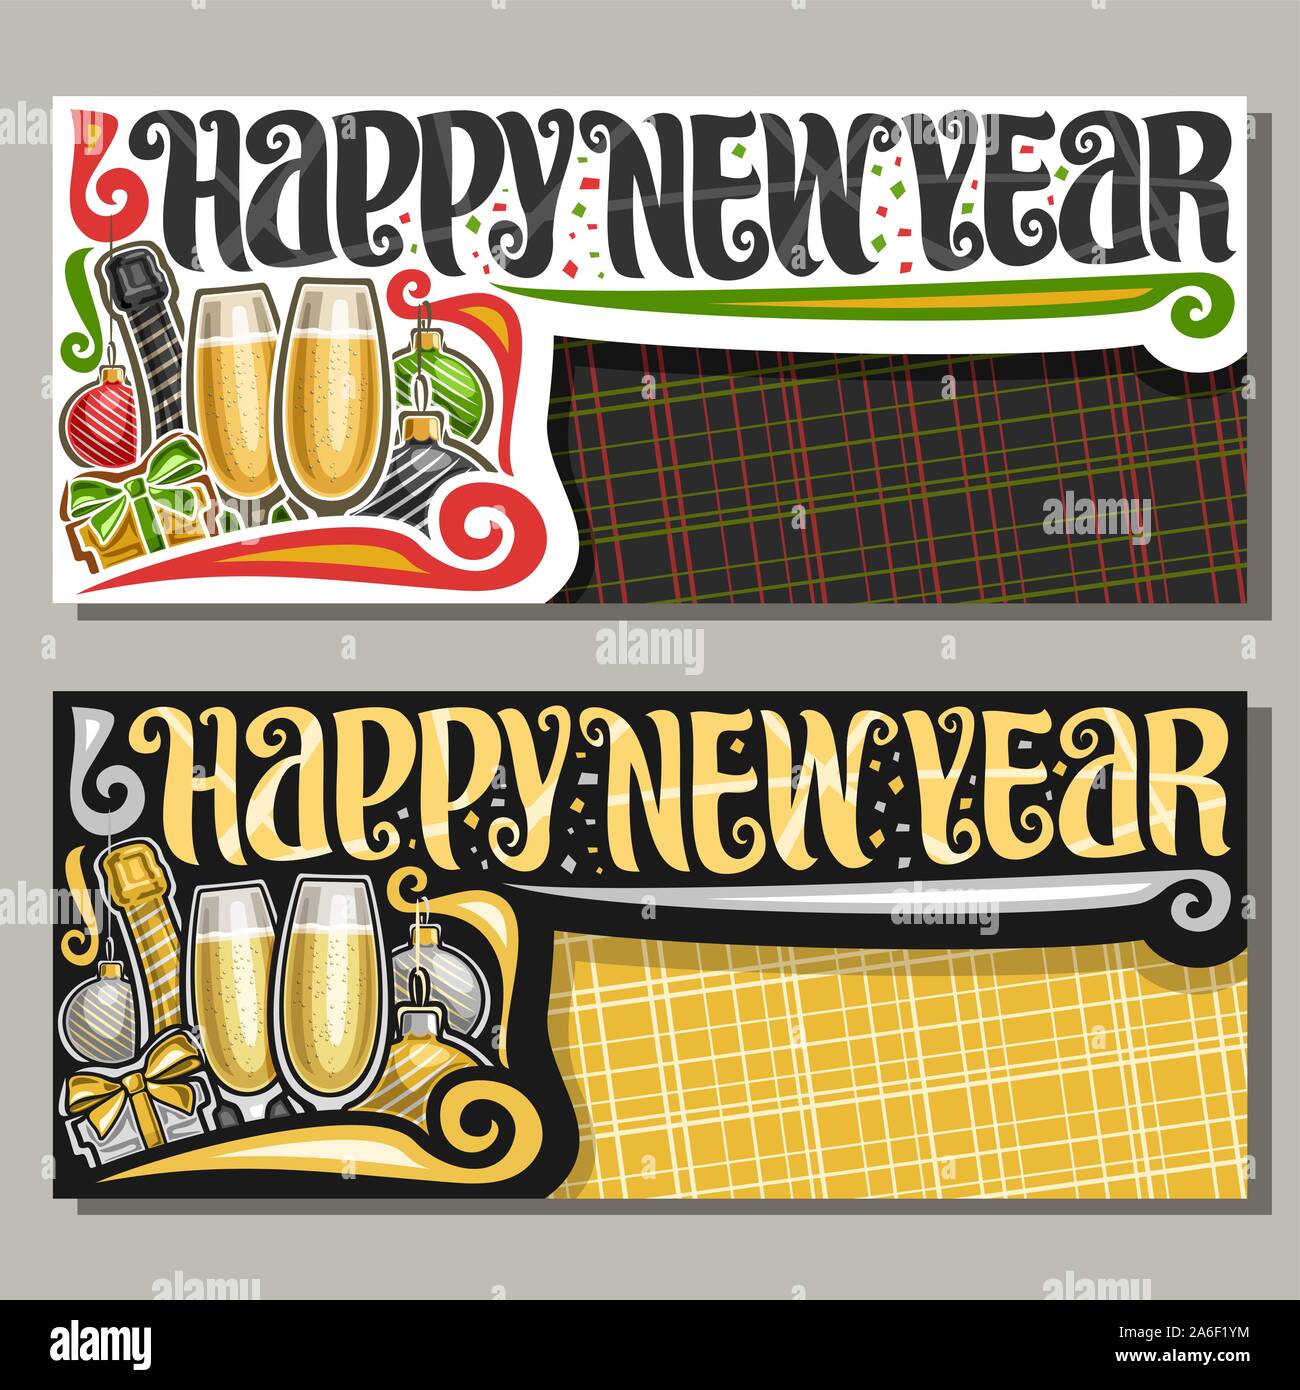 Vektor Banner für ein glückliches neues Jahr mit Kopie Raum, Flasche premium Champagner und Gläsern, Pinsel Kalligraphie für wünschen Nachricht - Frohes neues Jahr, bürgen Stock Vektor